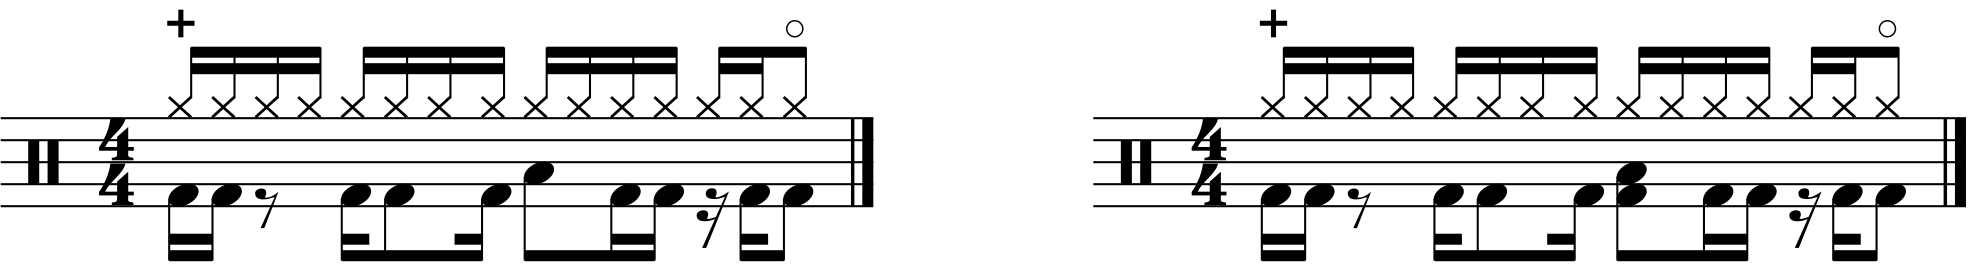 A double 43333 rhythmed groove